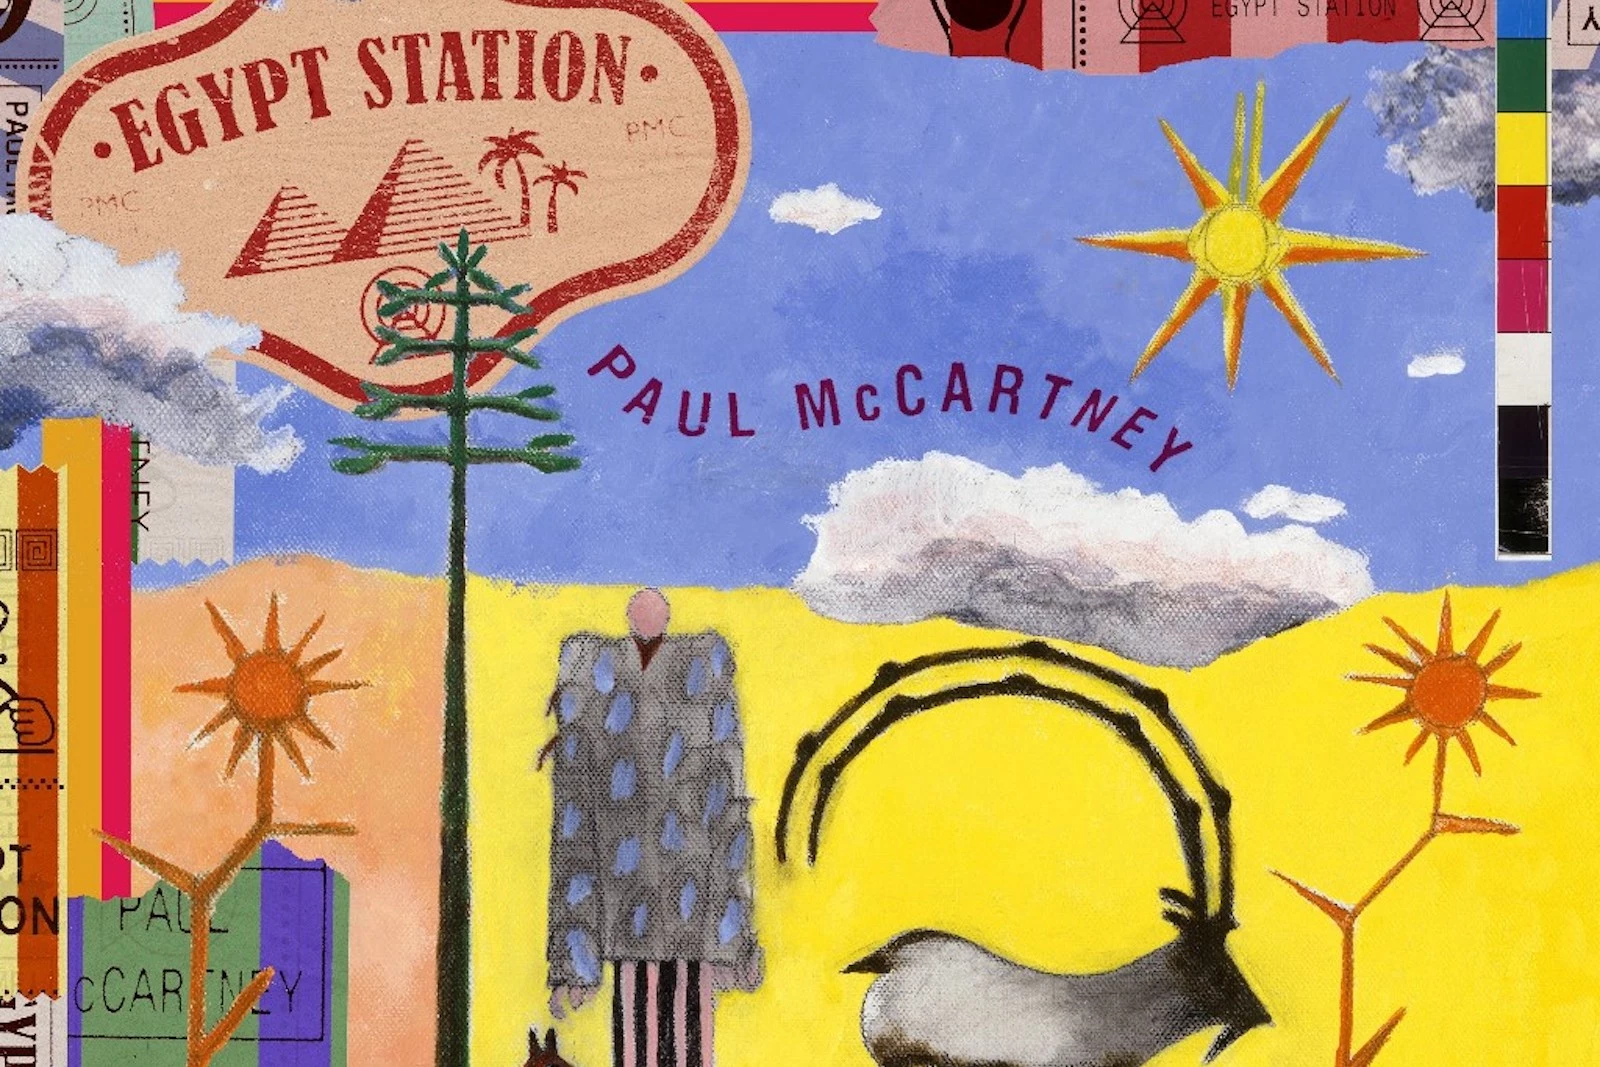 Image result for paul mccartney egypt station